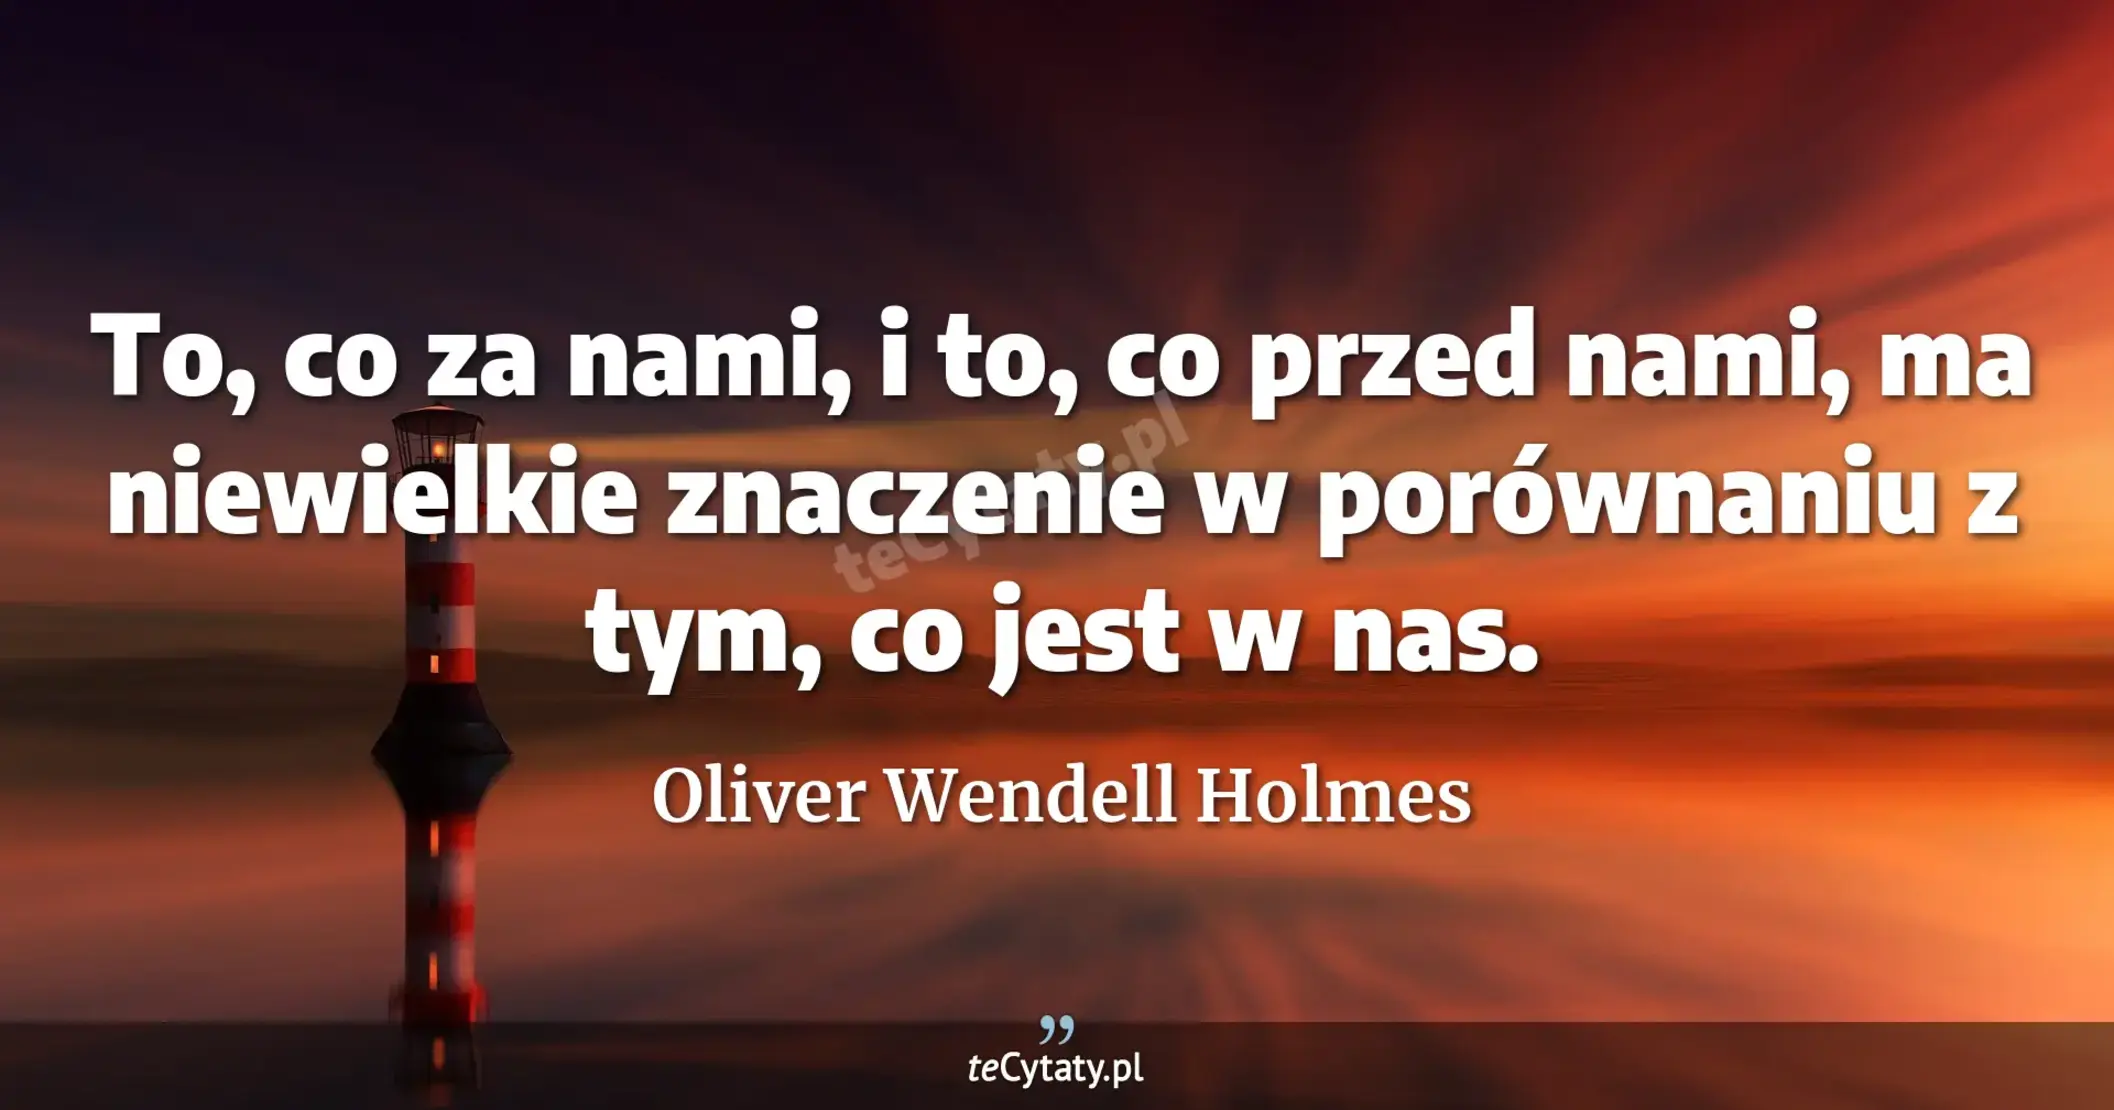 To, co za nami, i to, co przed nami, ma niewielkie znaczenie w porównaniu z tym, co jest w nas. - Oliver Wendell Holmes